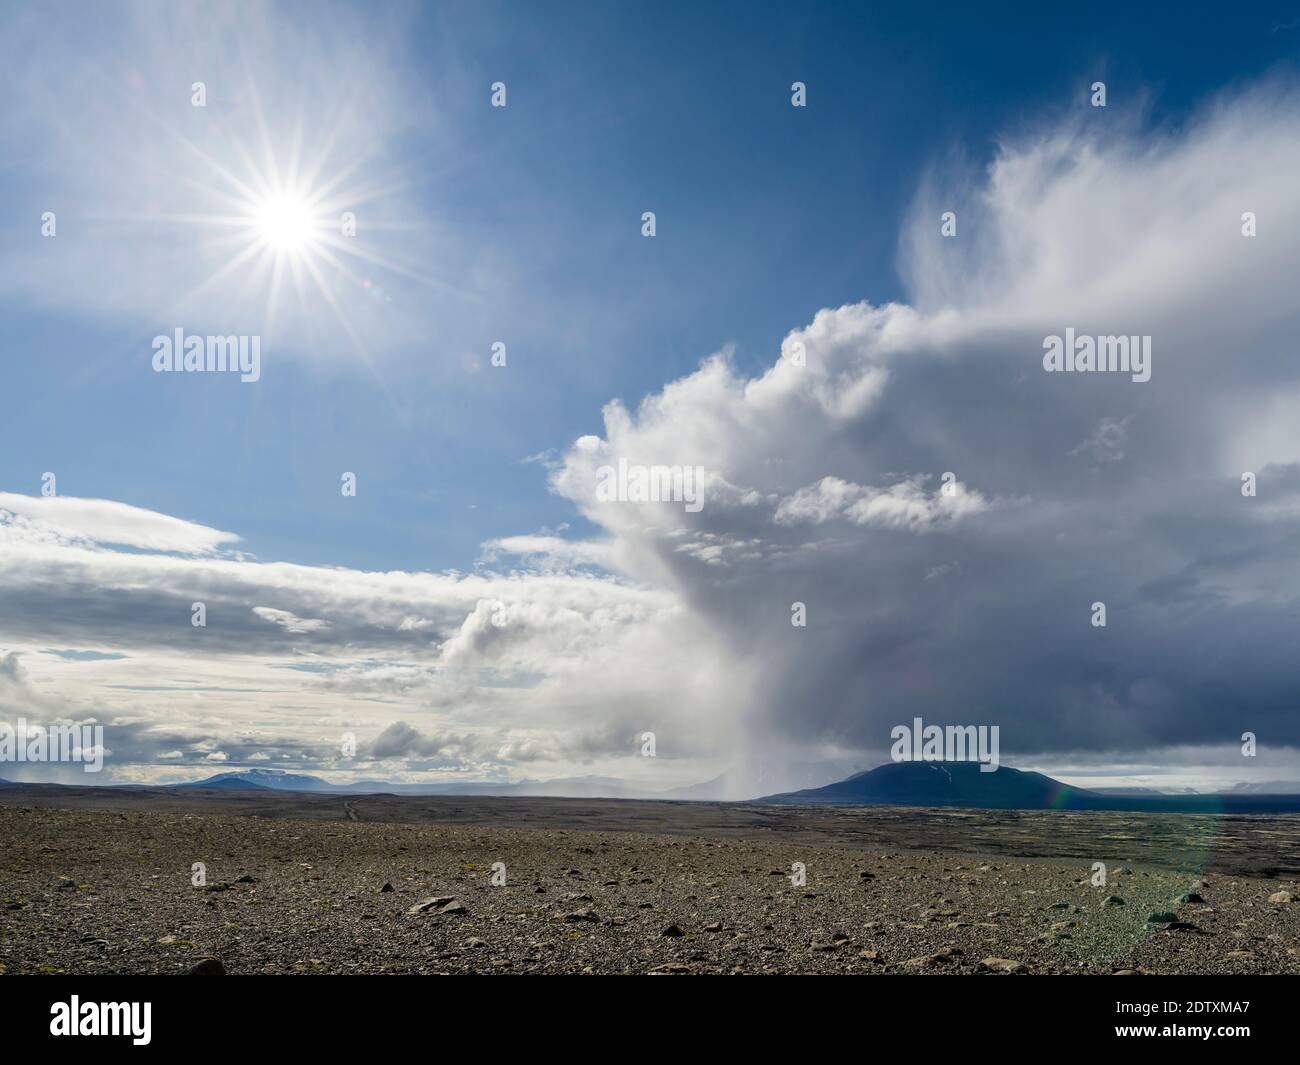 Paysage dans les hauts plateaux de l'Islande entre Hofsjoekull et Langjoekull (arrière-plan). Europe, Europe du Nord, Islande, août Banque D'Images